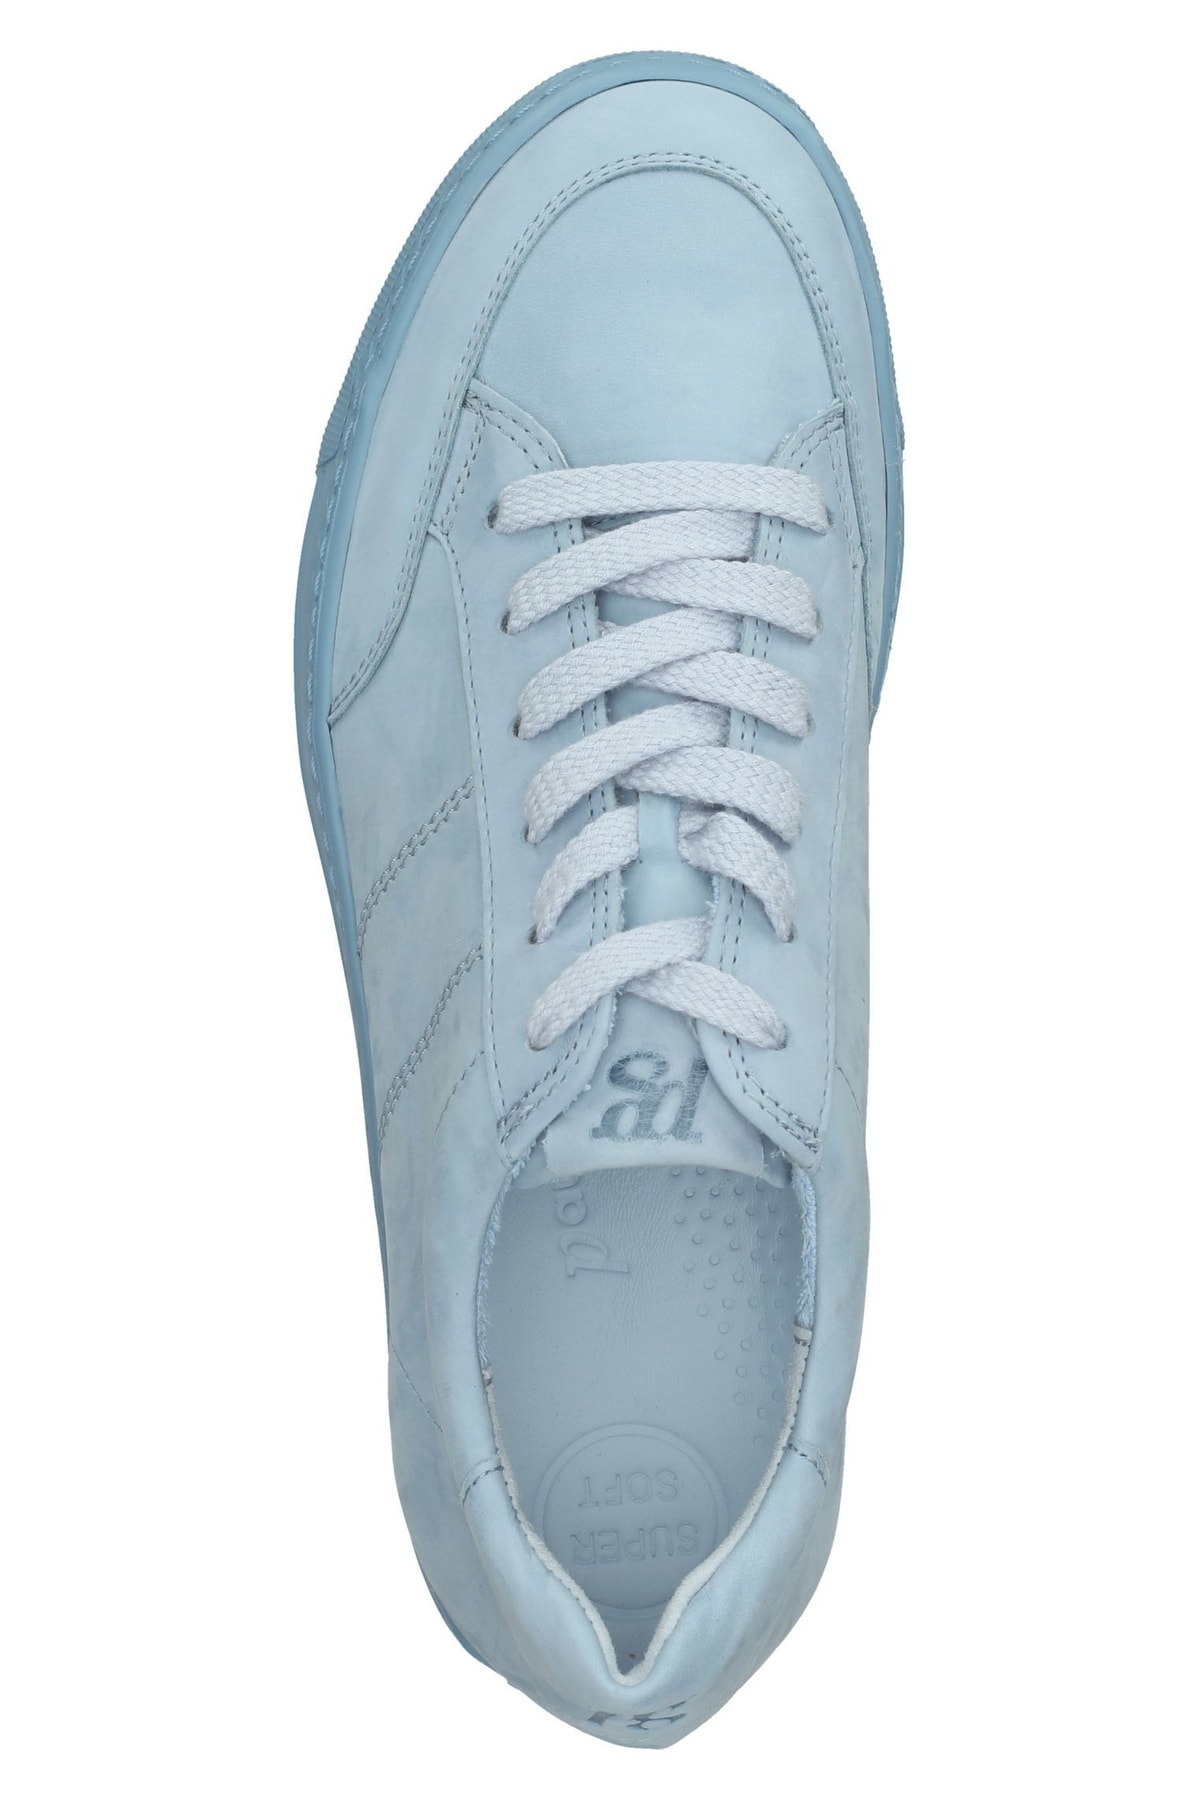 Paul Green Sneaker Blau Flacher Absatz Fast ausverkauft